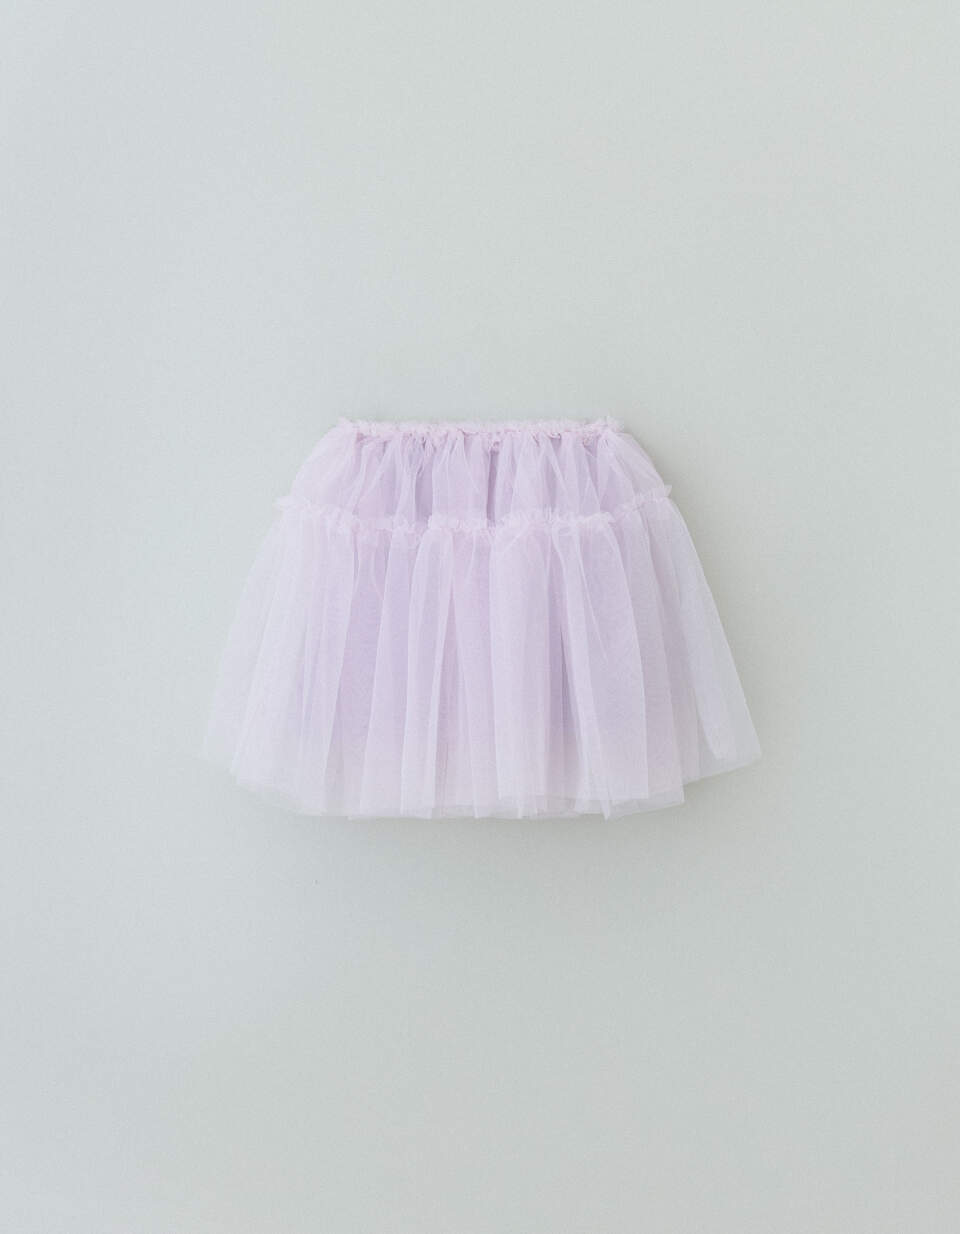 высококачественные кружевные подъюбники для косплея лолита 2 обруча пышная юбка для девочек платья свадебный аксессуар Пышная юбка для девочек